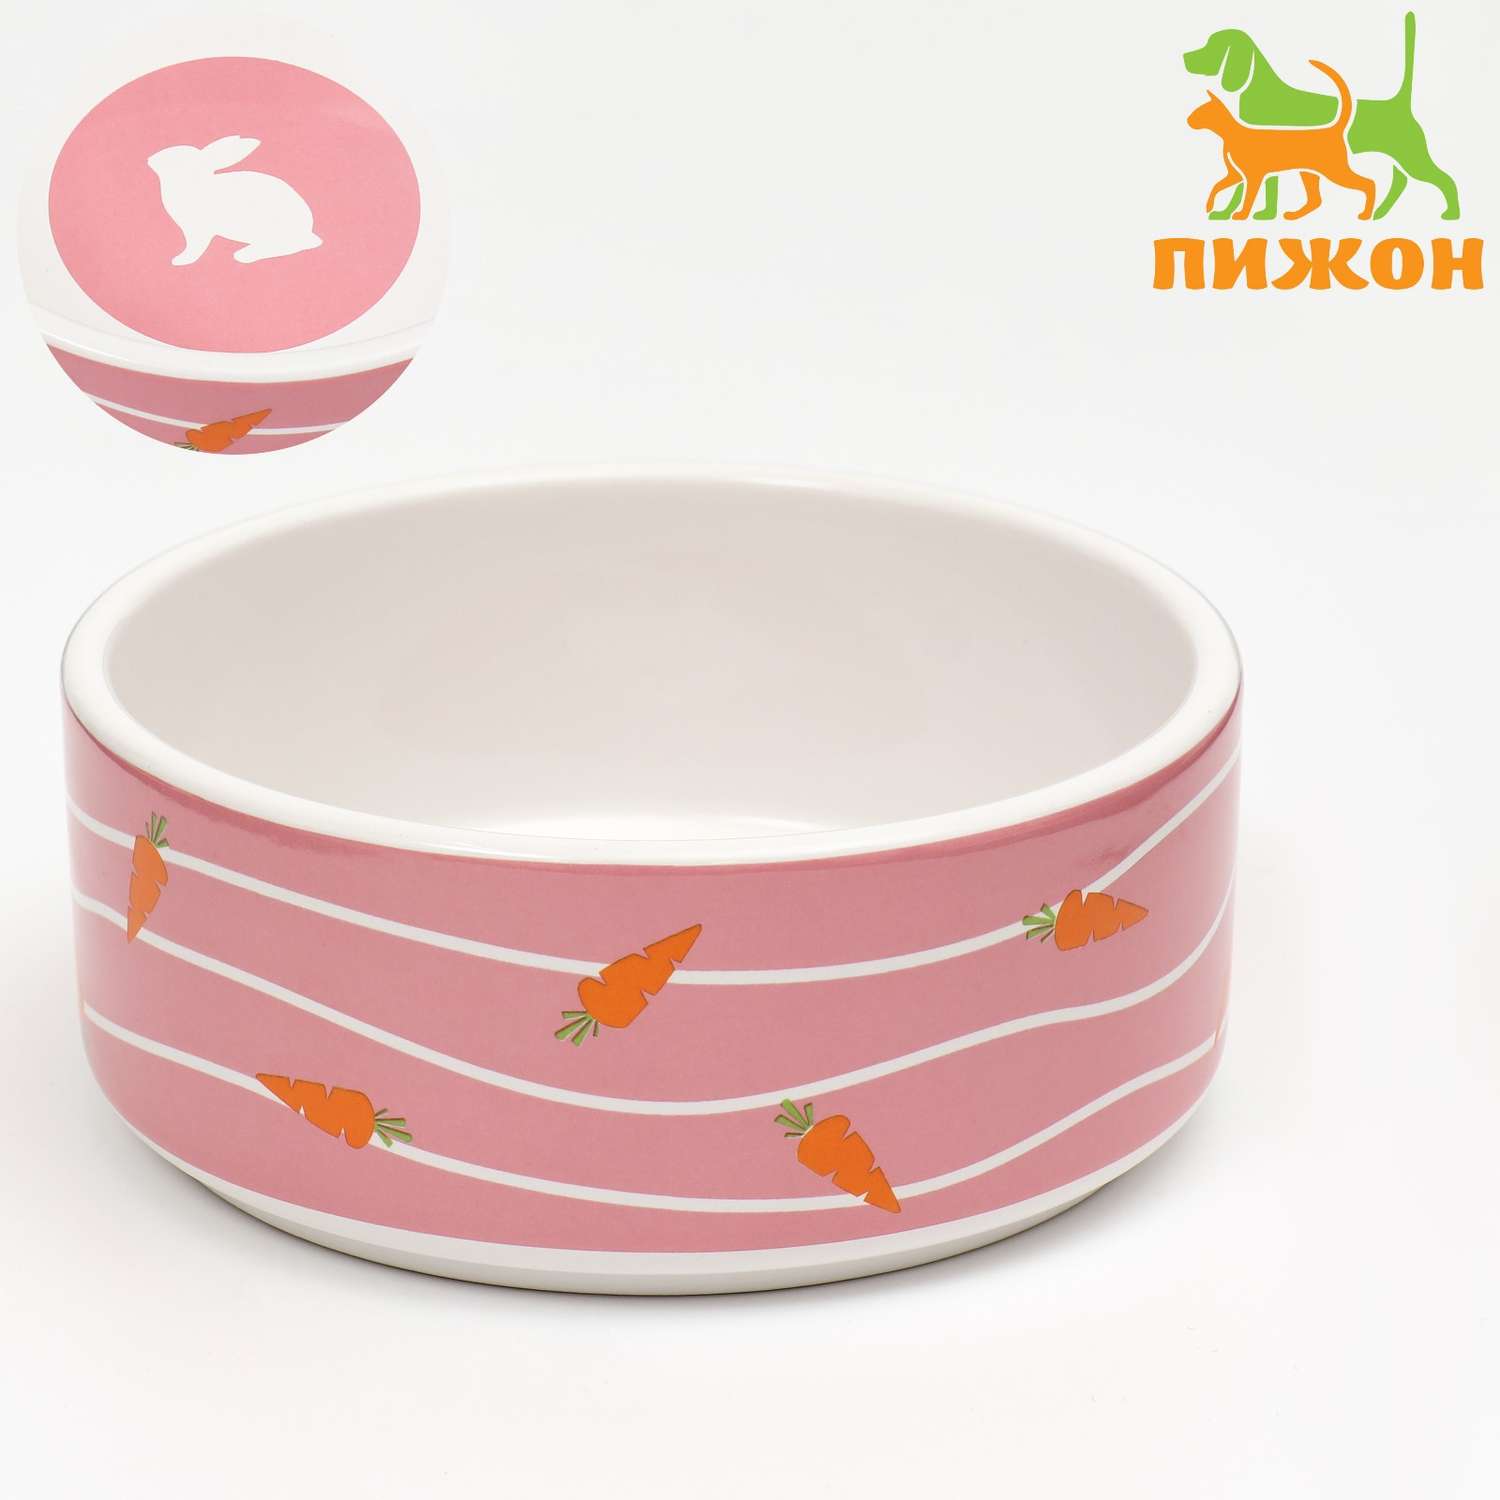 Миска Пижон керамическая «Зайчик с морковками» 300 мл 13x13x5 cм розовая - фото 1